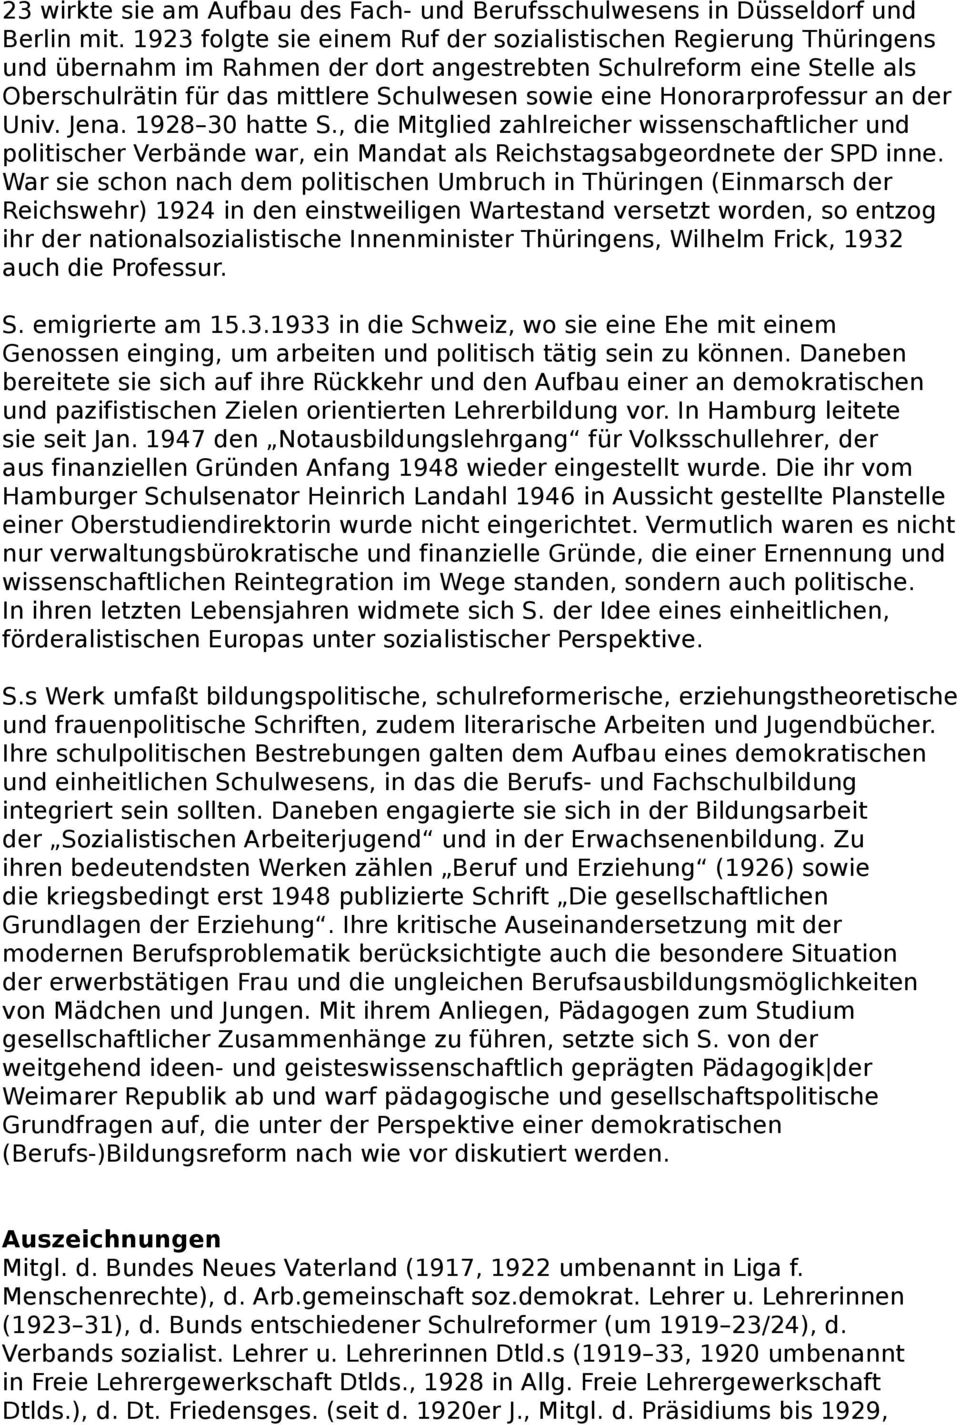 Honorarprofessur an der Univ. Jena. 1928 30 hatte S., die Mitglied zahlreicher wissenschaftlicher und politischer Verbände war, ein Mandat als Reichstagsabgeordnete der SPD inne.